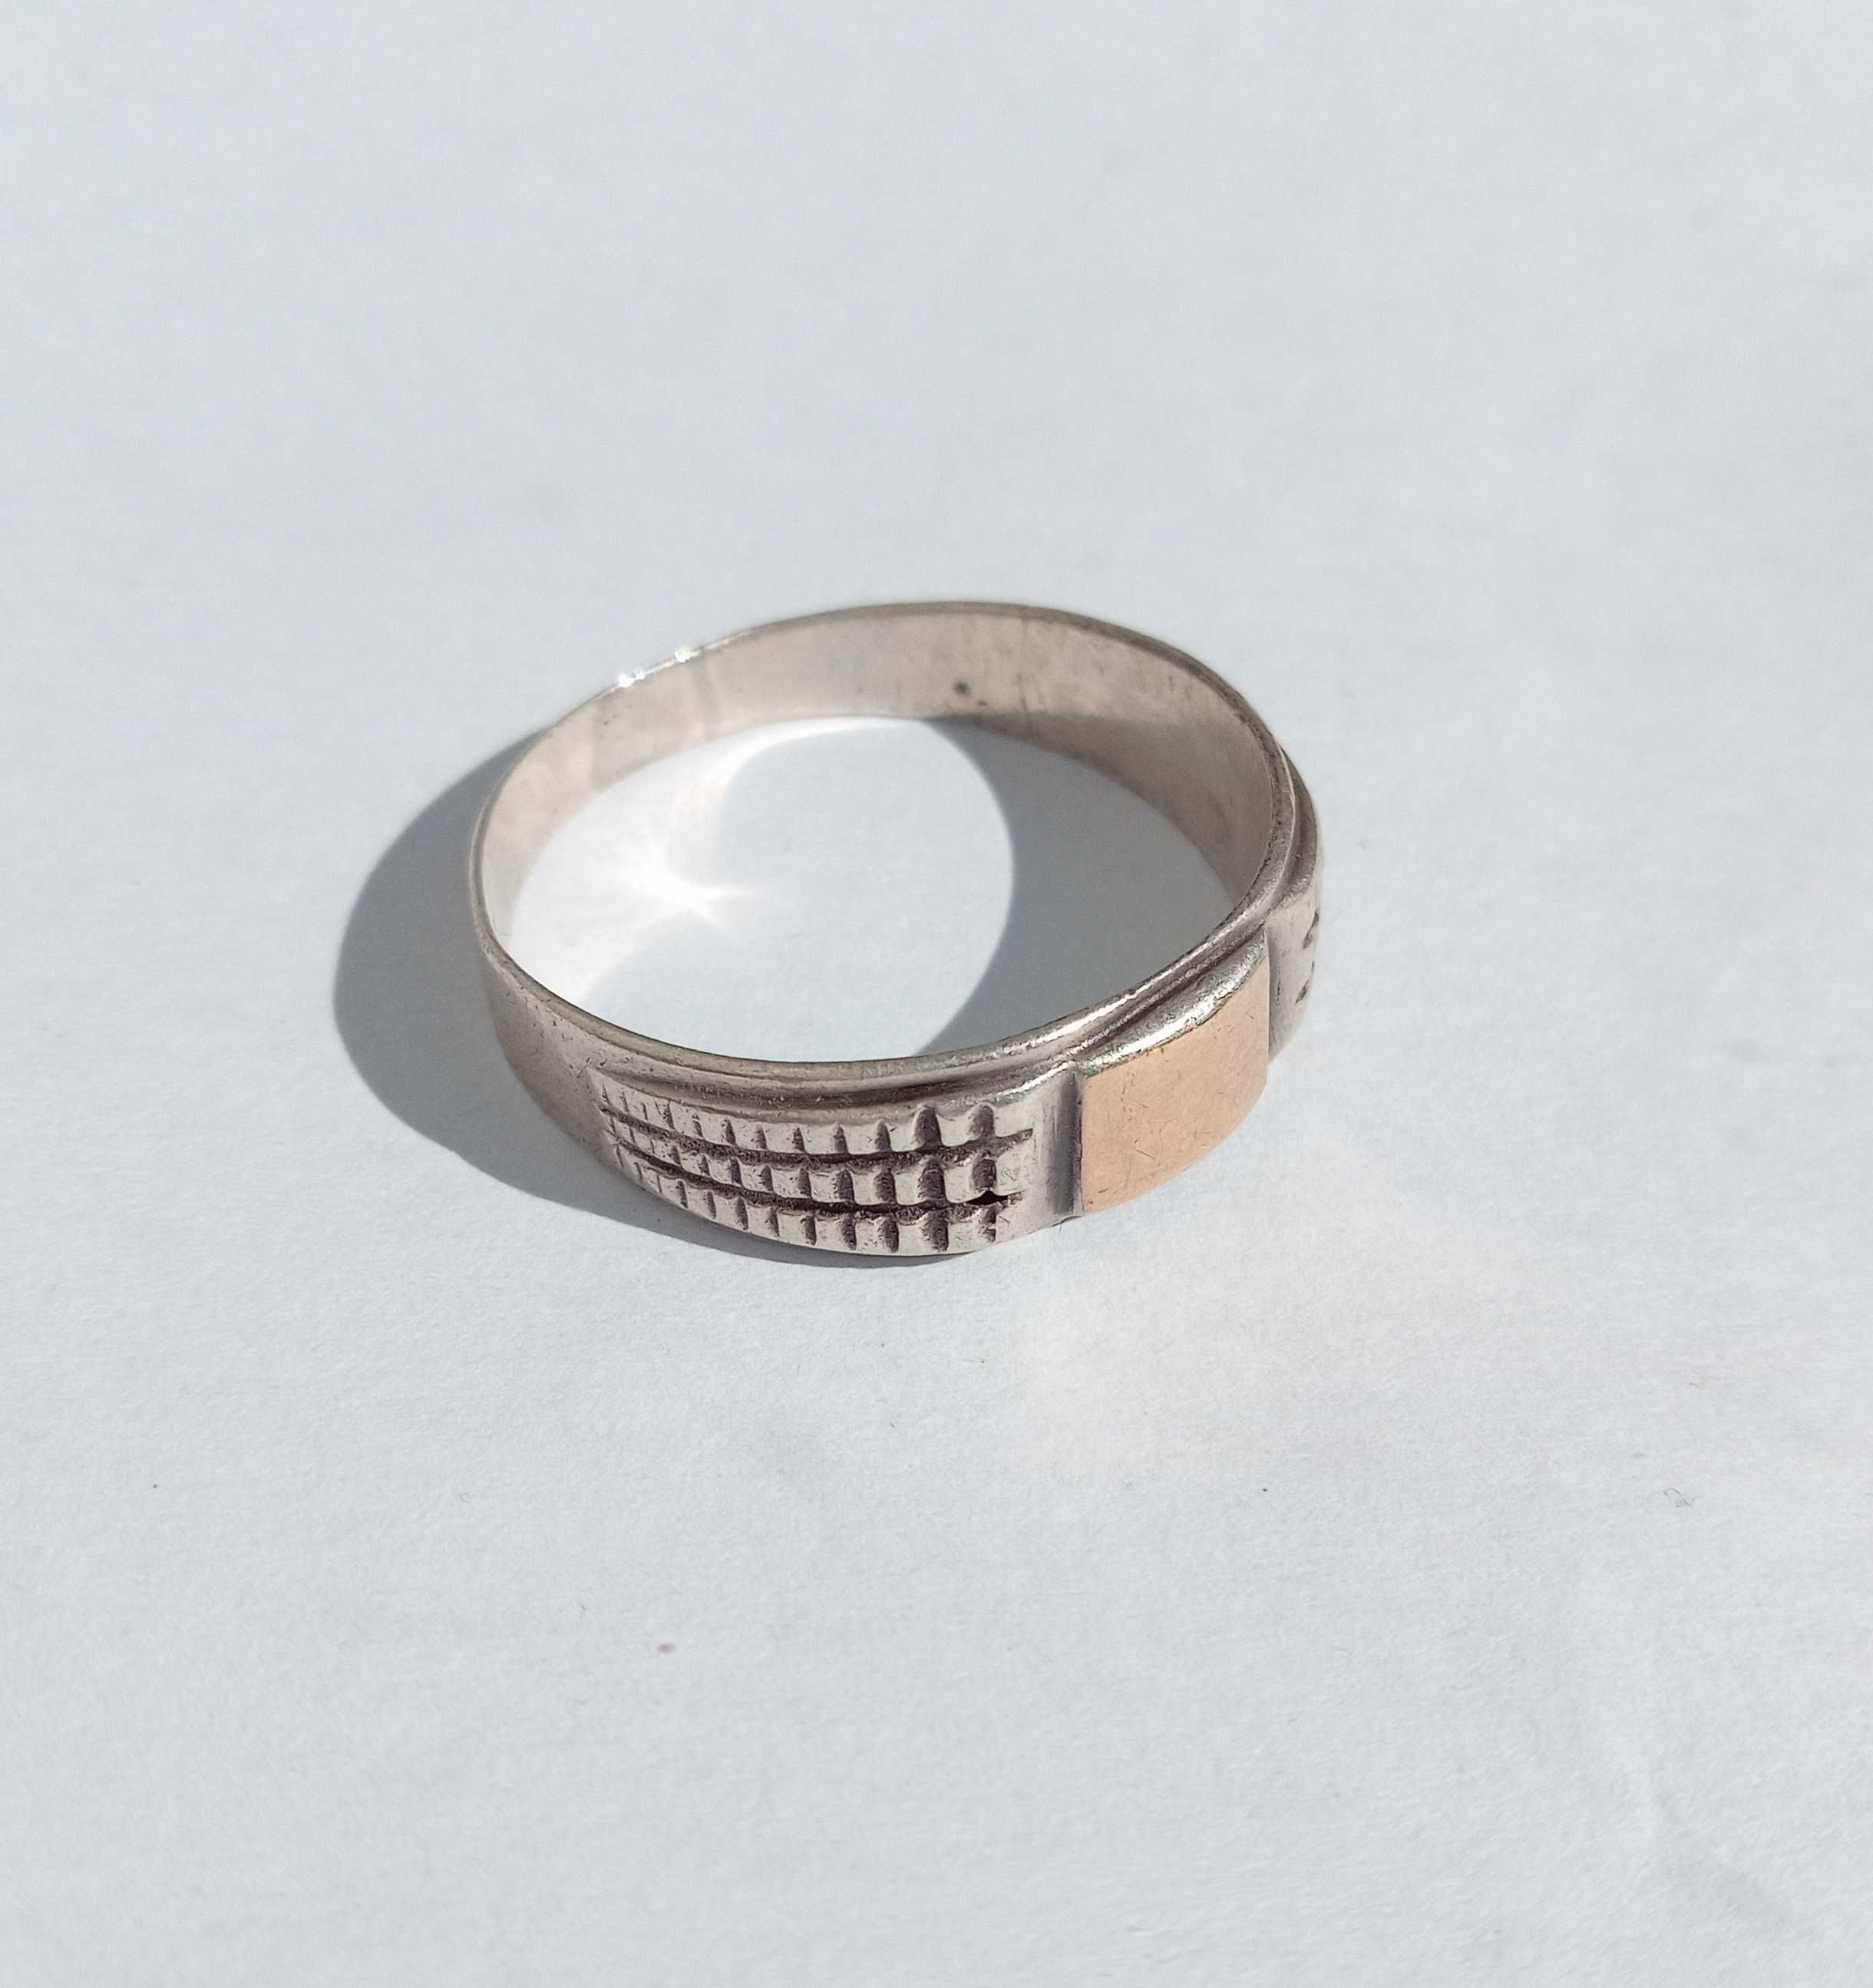 Кольцо, перстень срібло, золото. Вага 3,4 г. Розмір 21